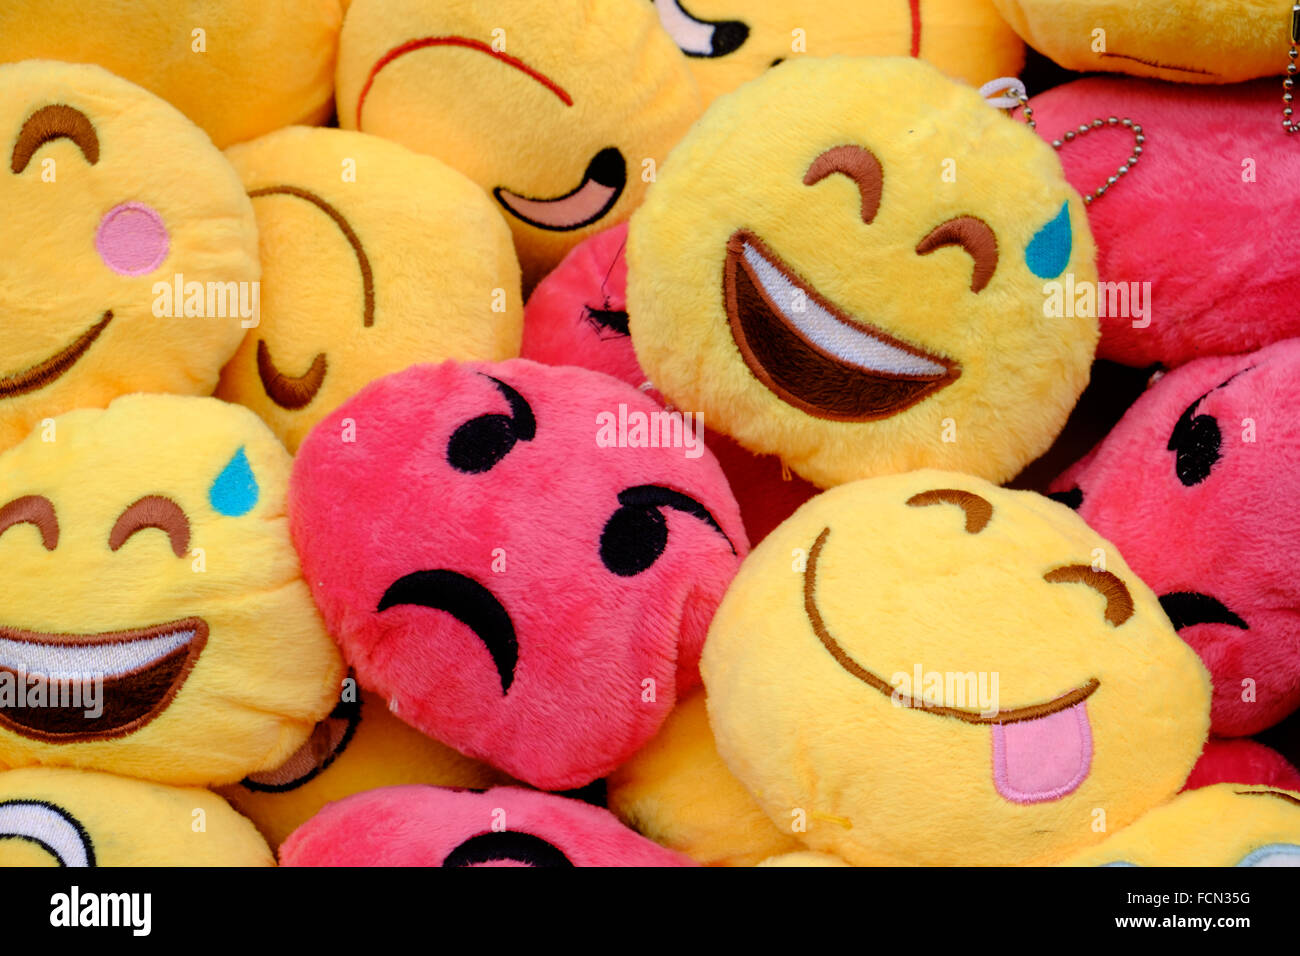 Wütendes Gesicht in der Menge der glückliche Gesichter Stockfoto